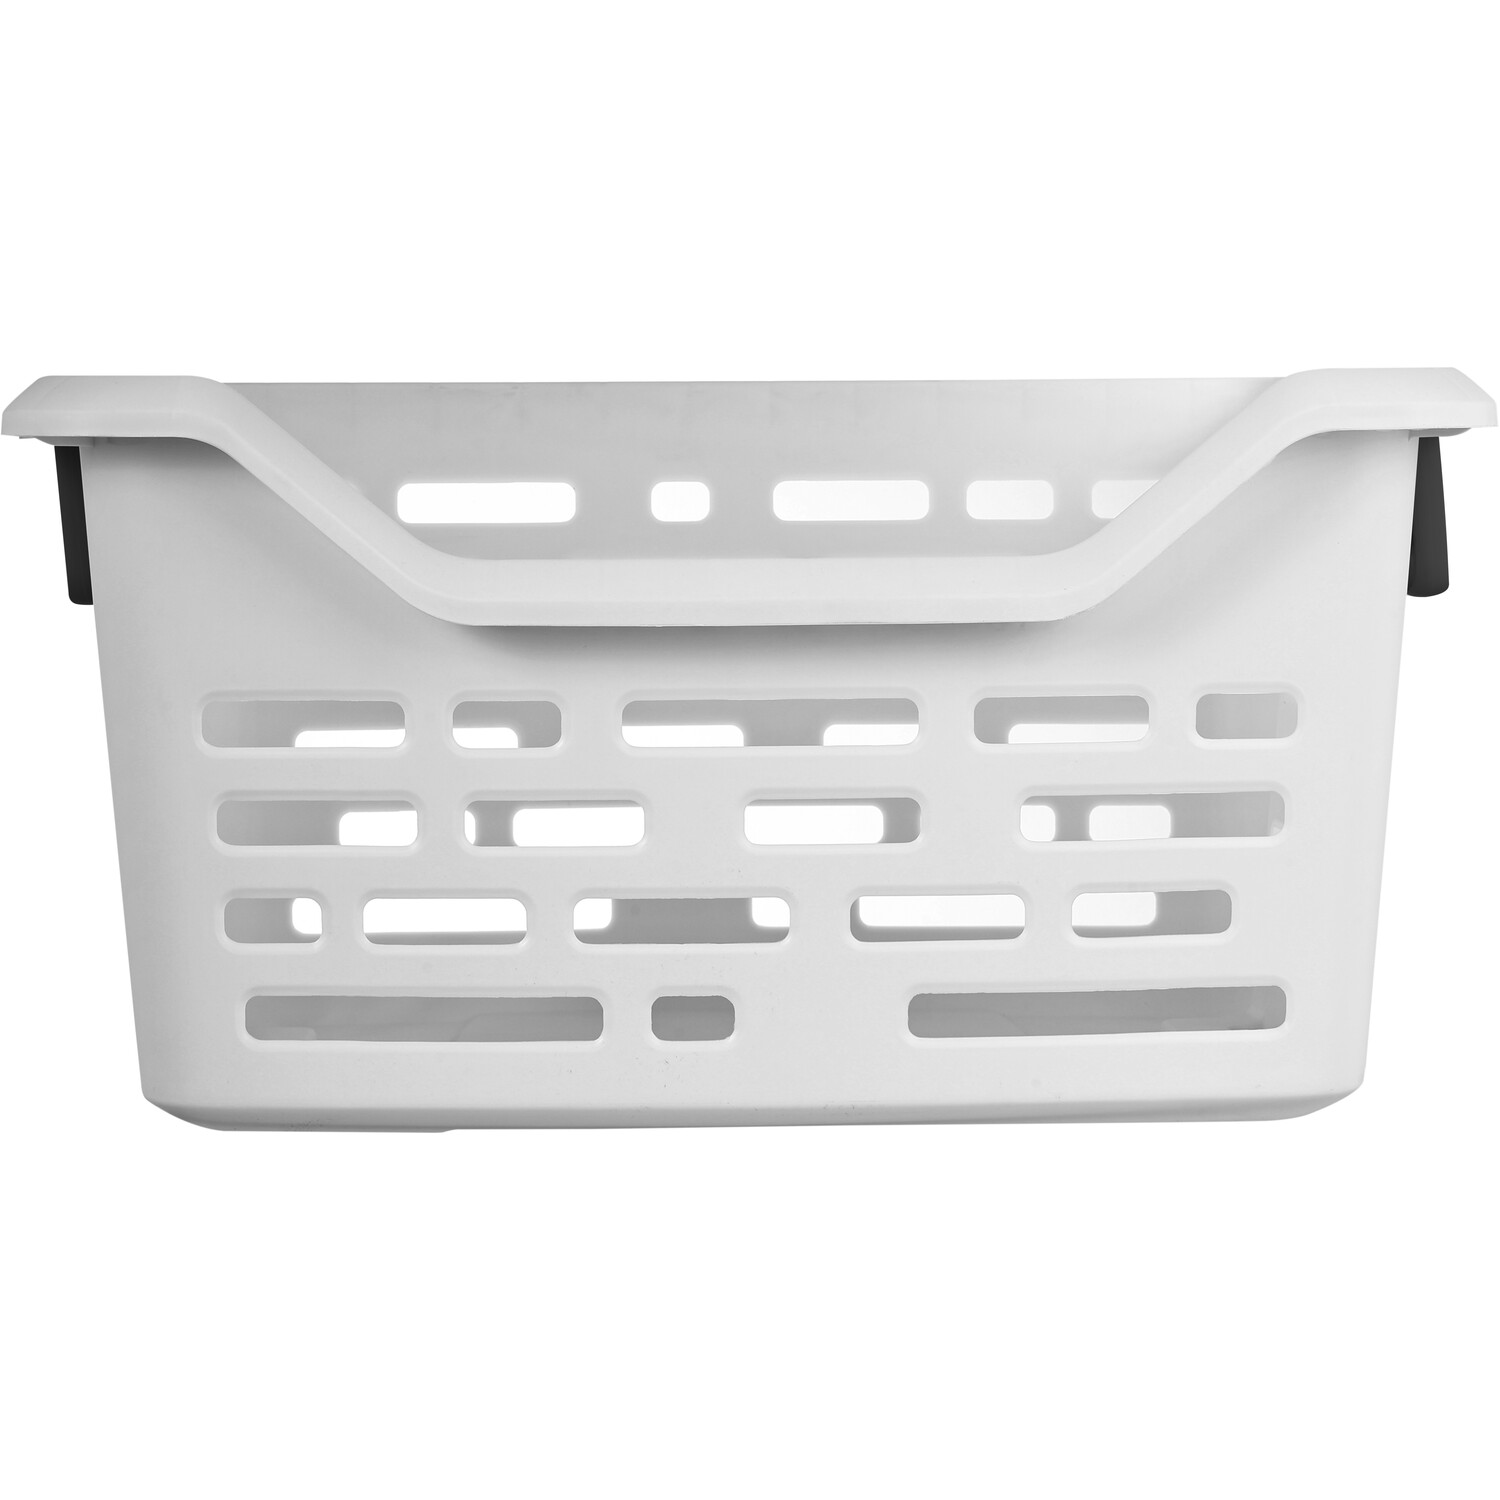 Ezy Linea Stackable Laundry Basket Image 1